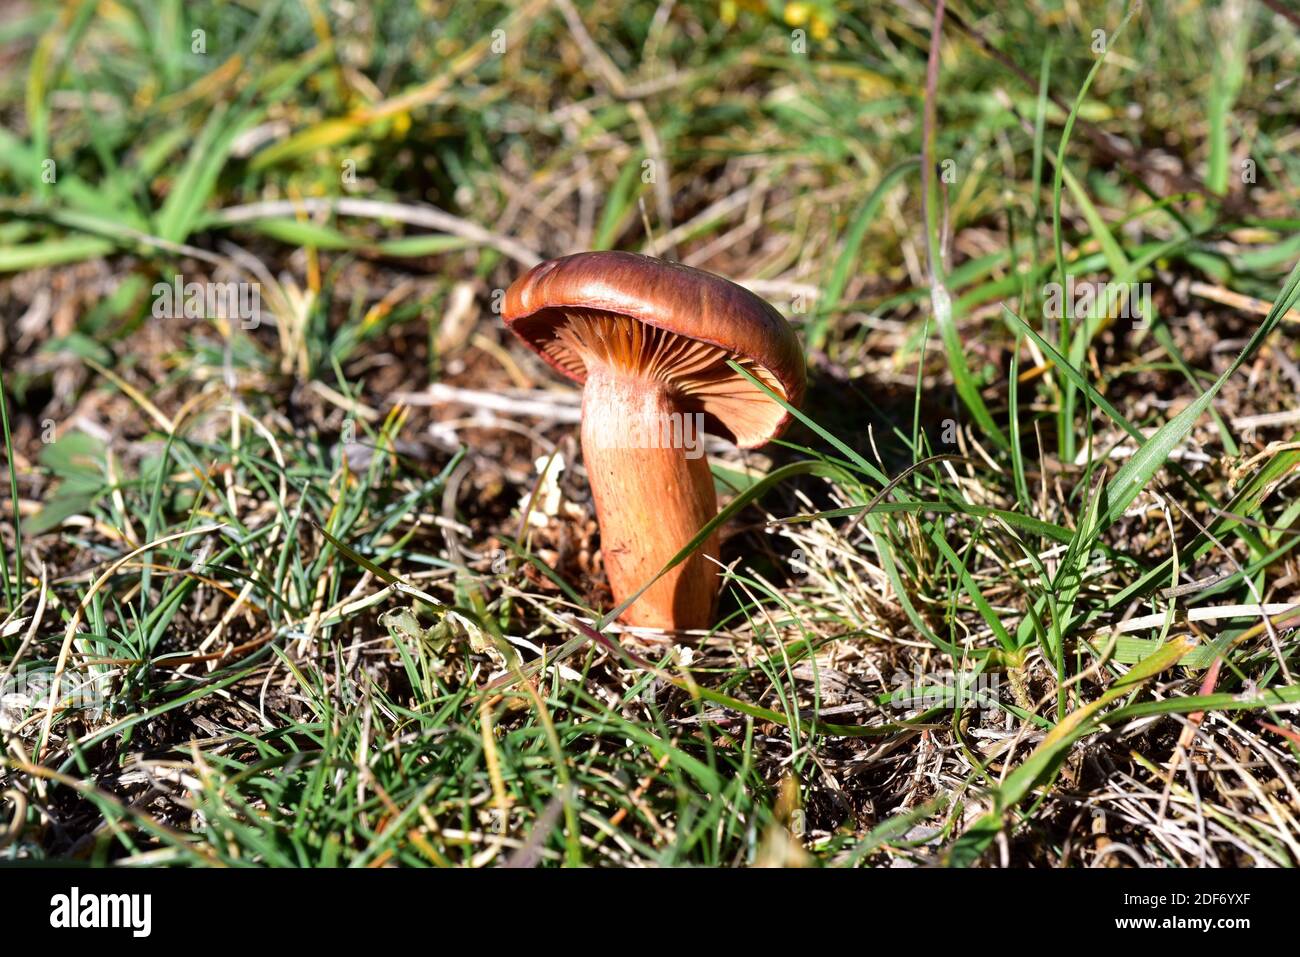 Le slimecap brun ou la pointe de cuivre (Chroogomphus rutilus) est un champignon comestible. Cette photo a été prise dans une forêt de pins près de Cantavieja, province de Teruel, Banque D'Images